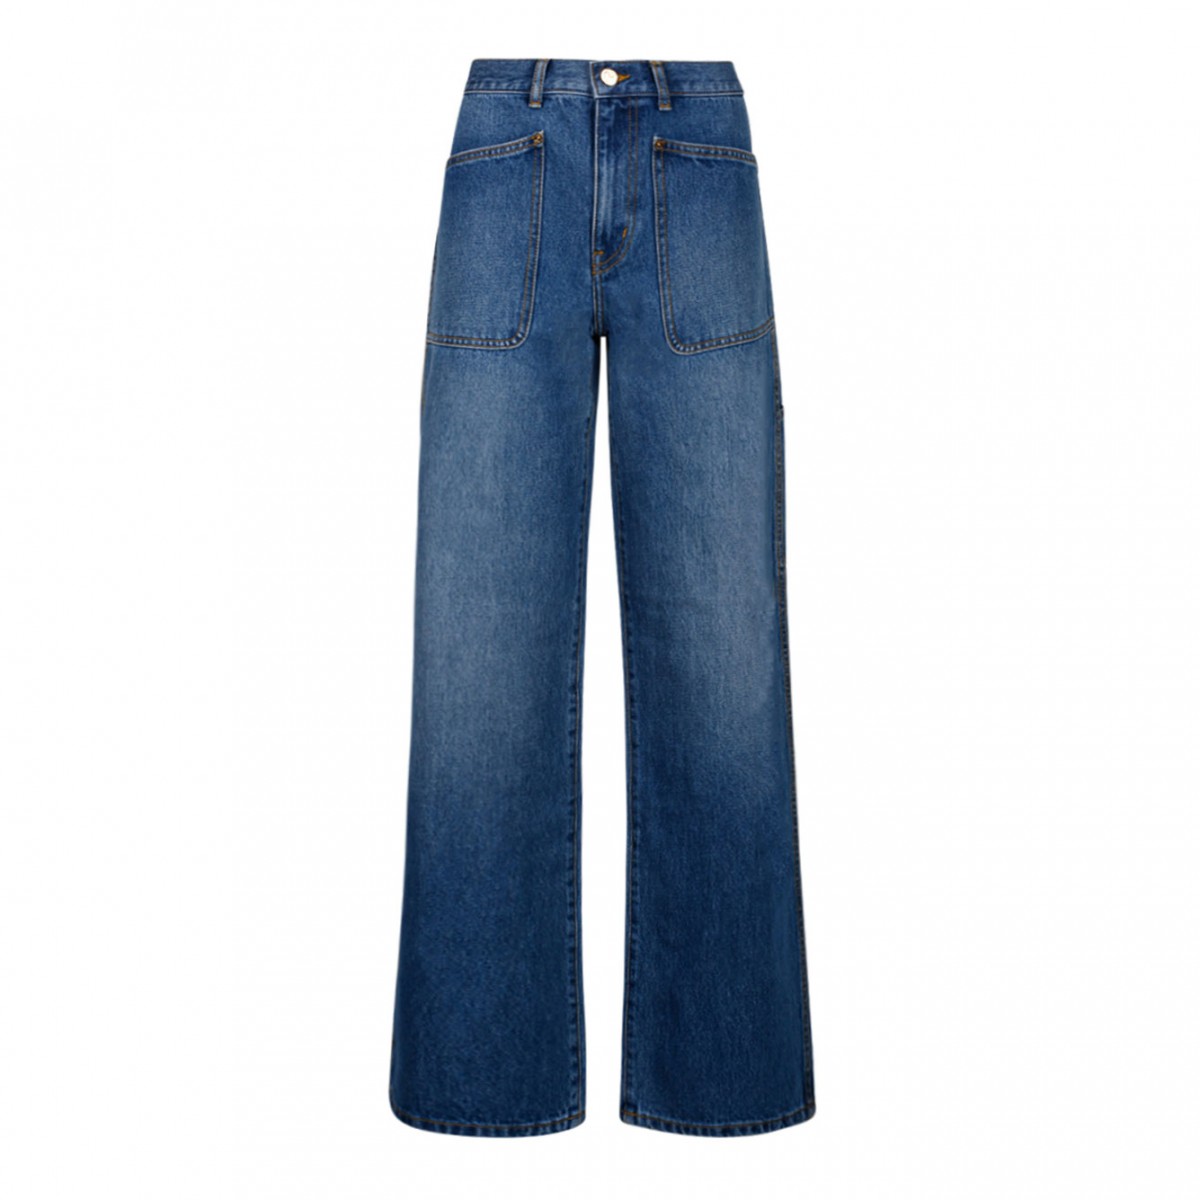 Blue Denim Cotton Jeans